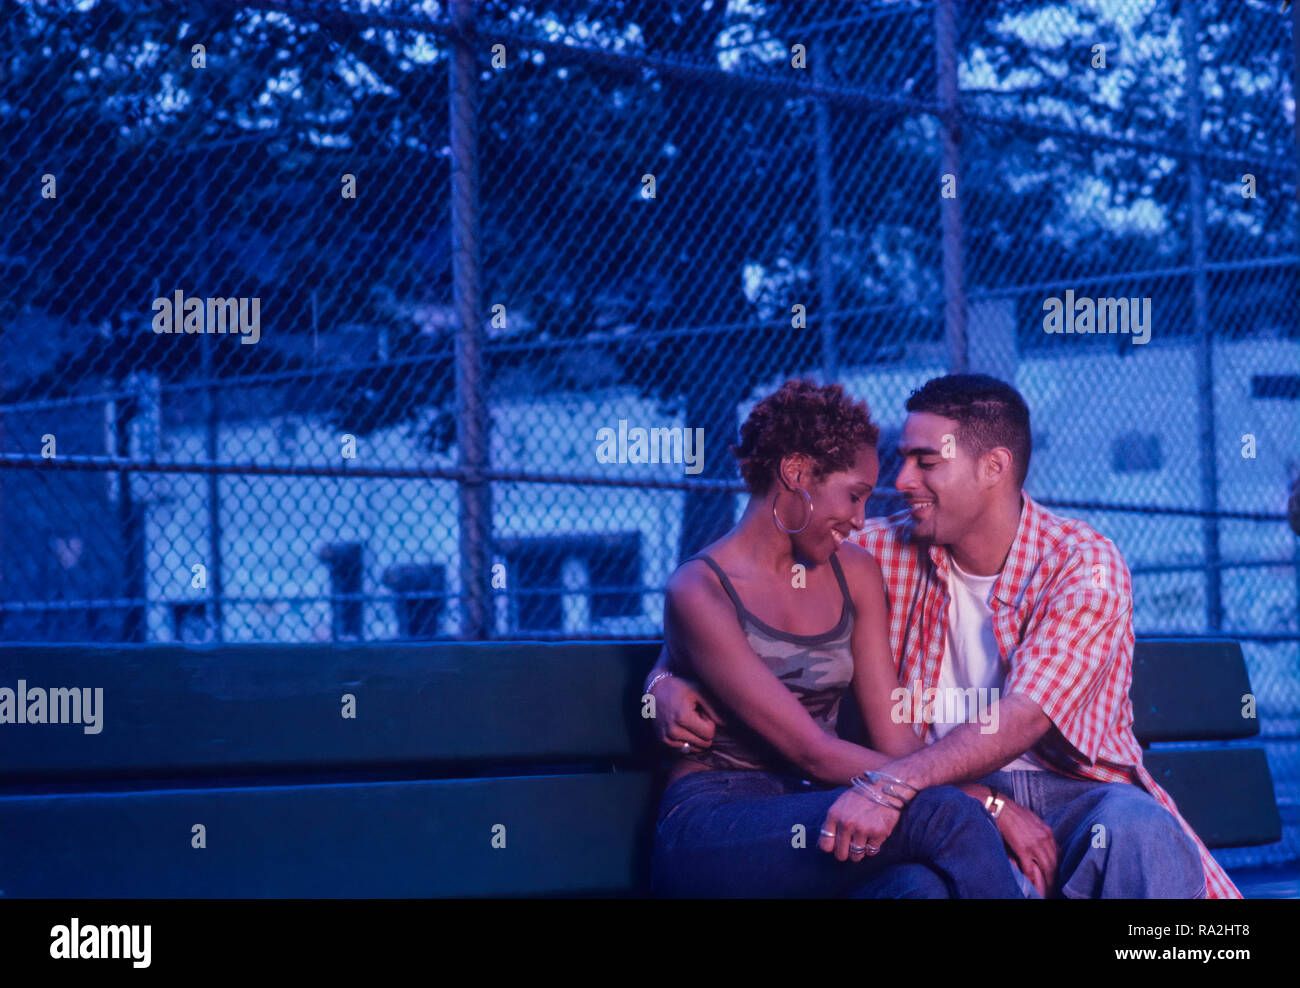 Junge, Urbane, ethnischen Paar auf einer Parkbank in der Abenddämmerung oder am frühen Abend flirten Stockfoto